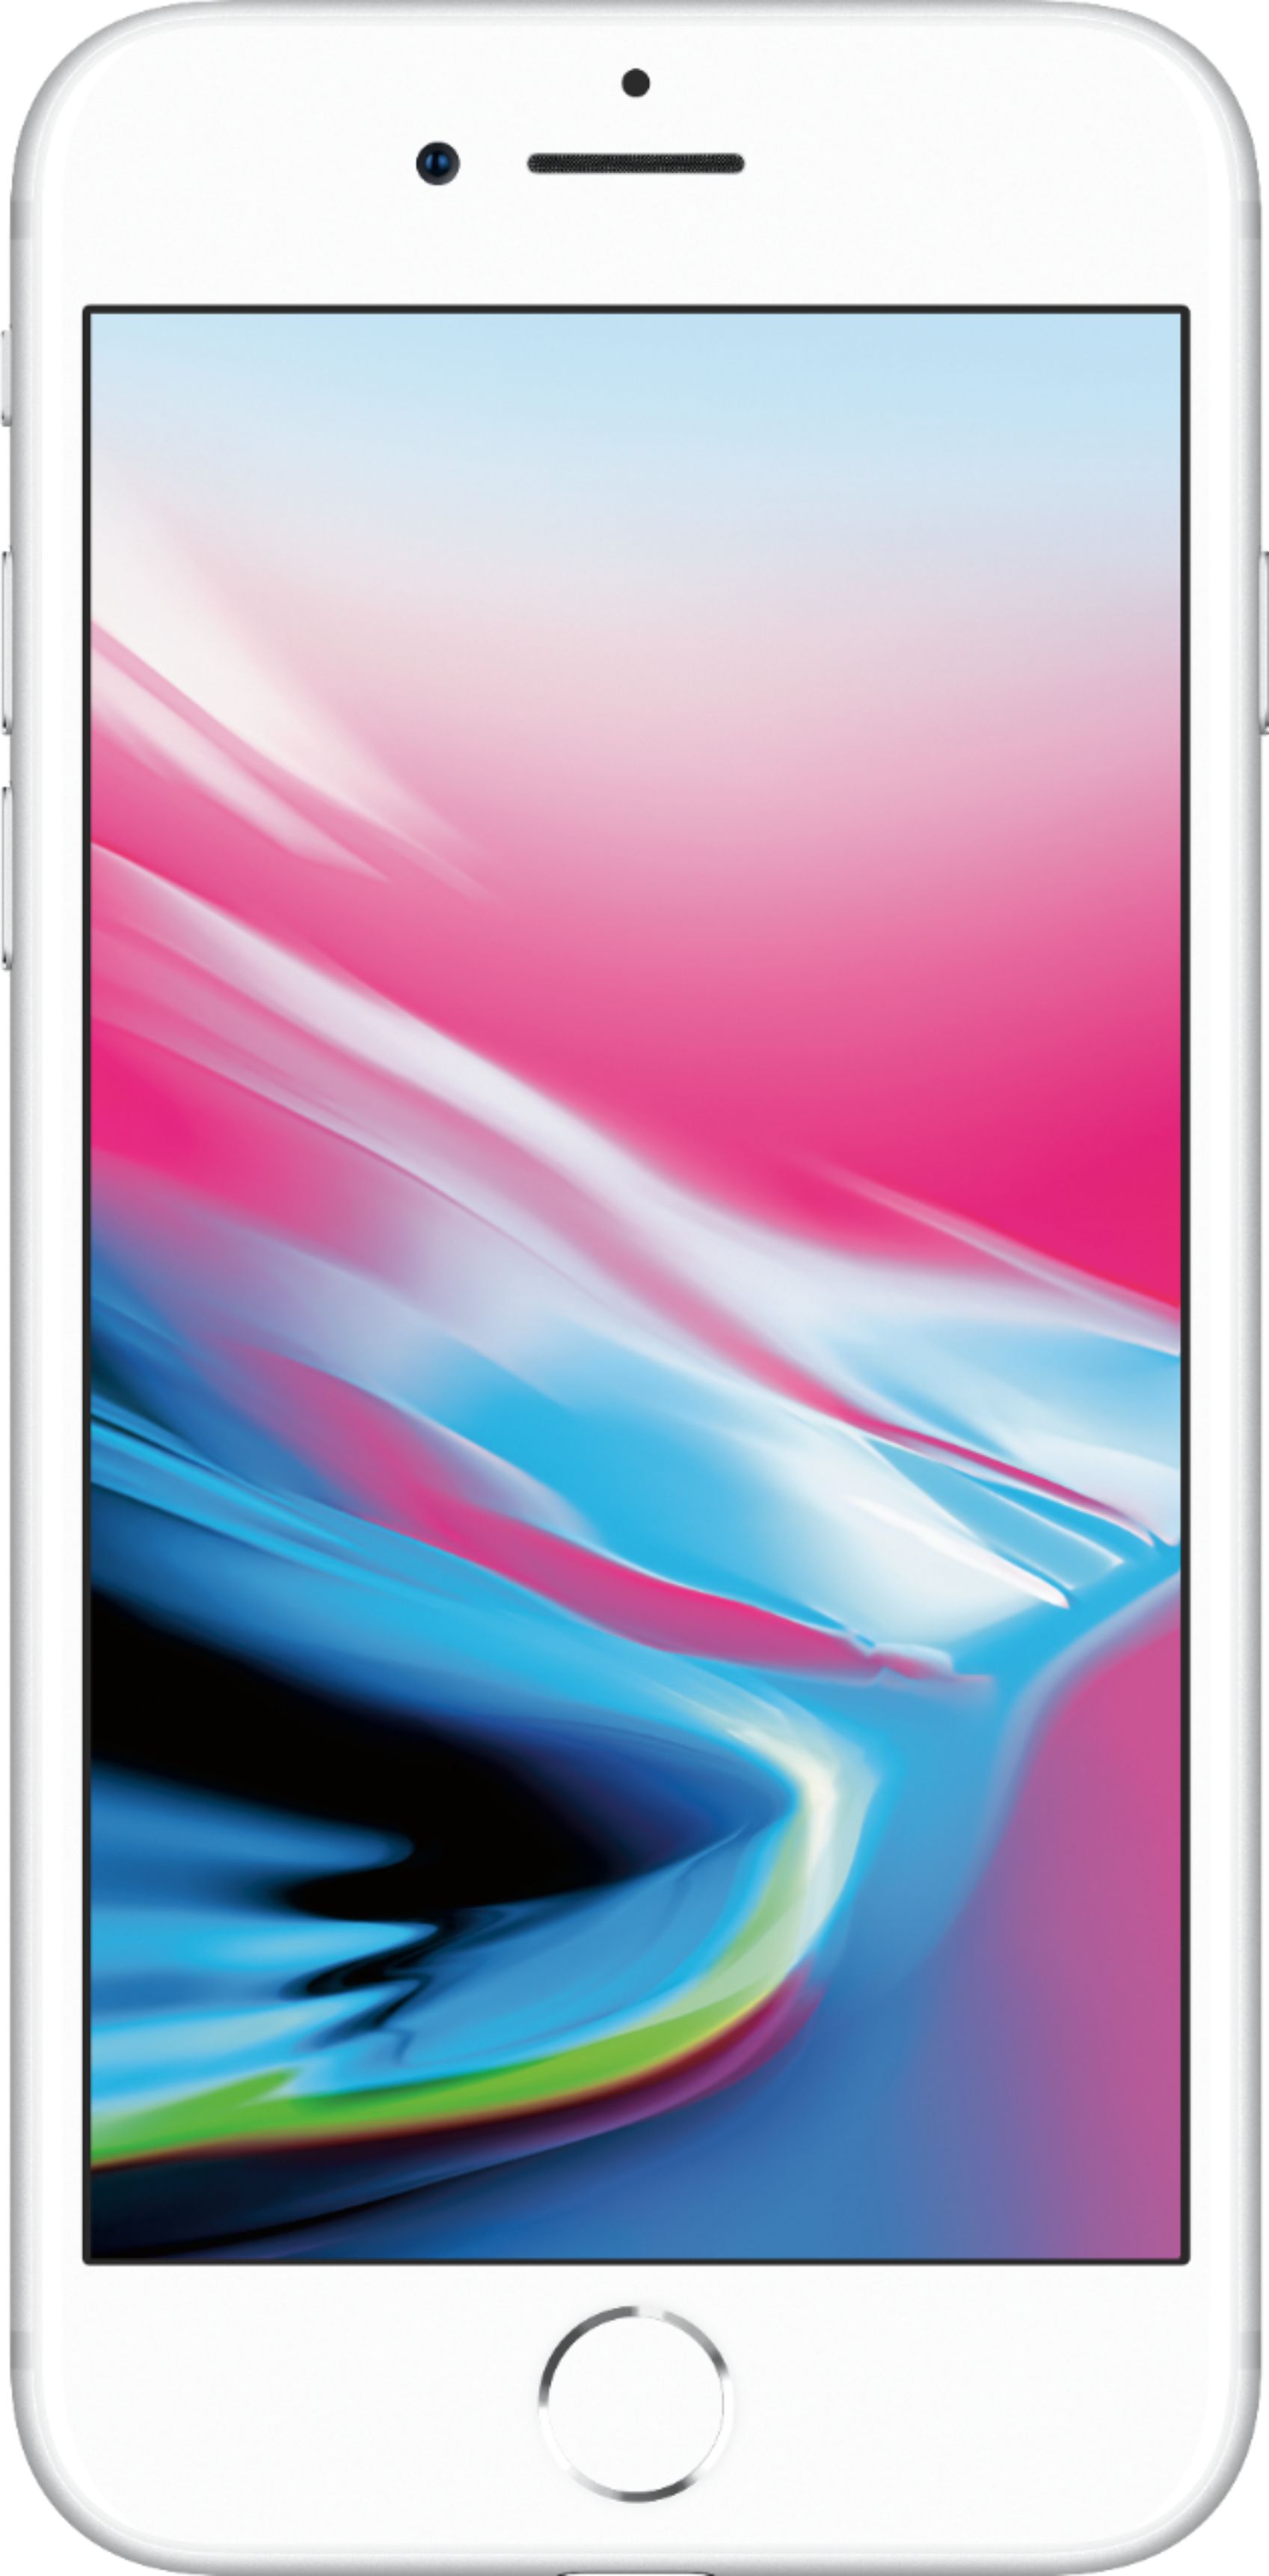 Apple iPhone 8 64GB Silver (Verizon) MQ6L2LL/A - Best Buy